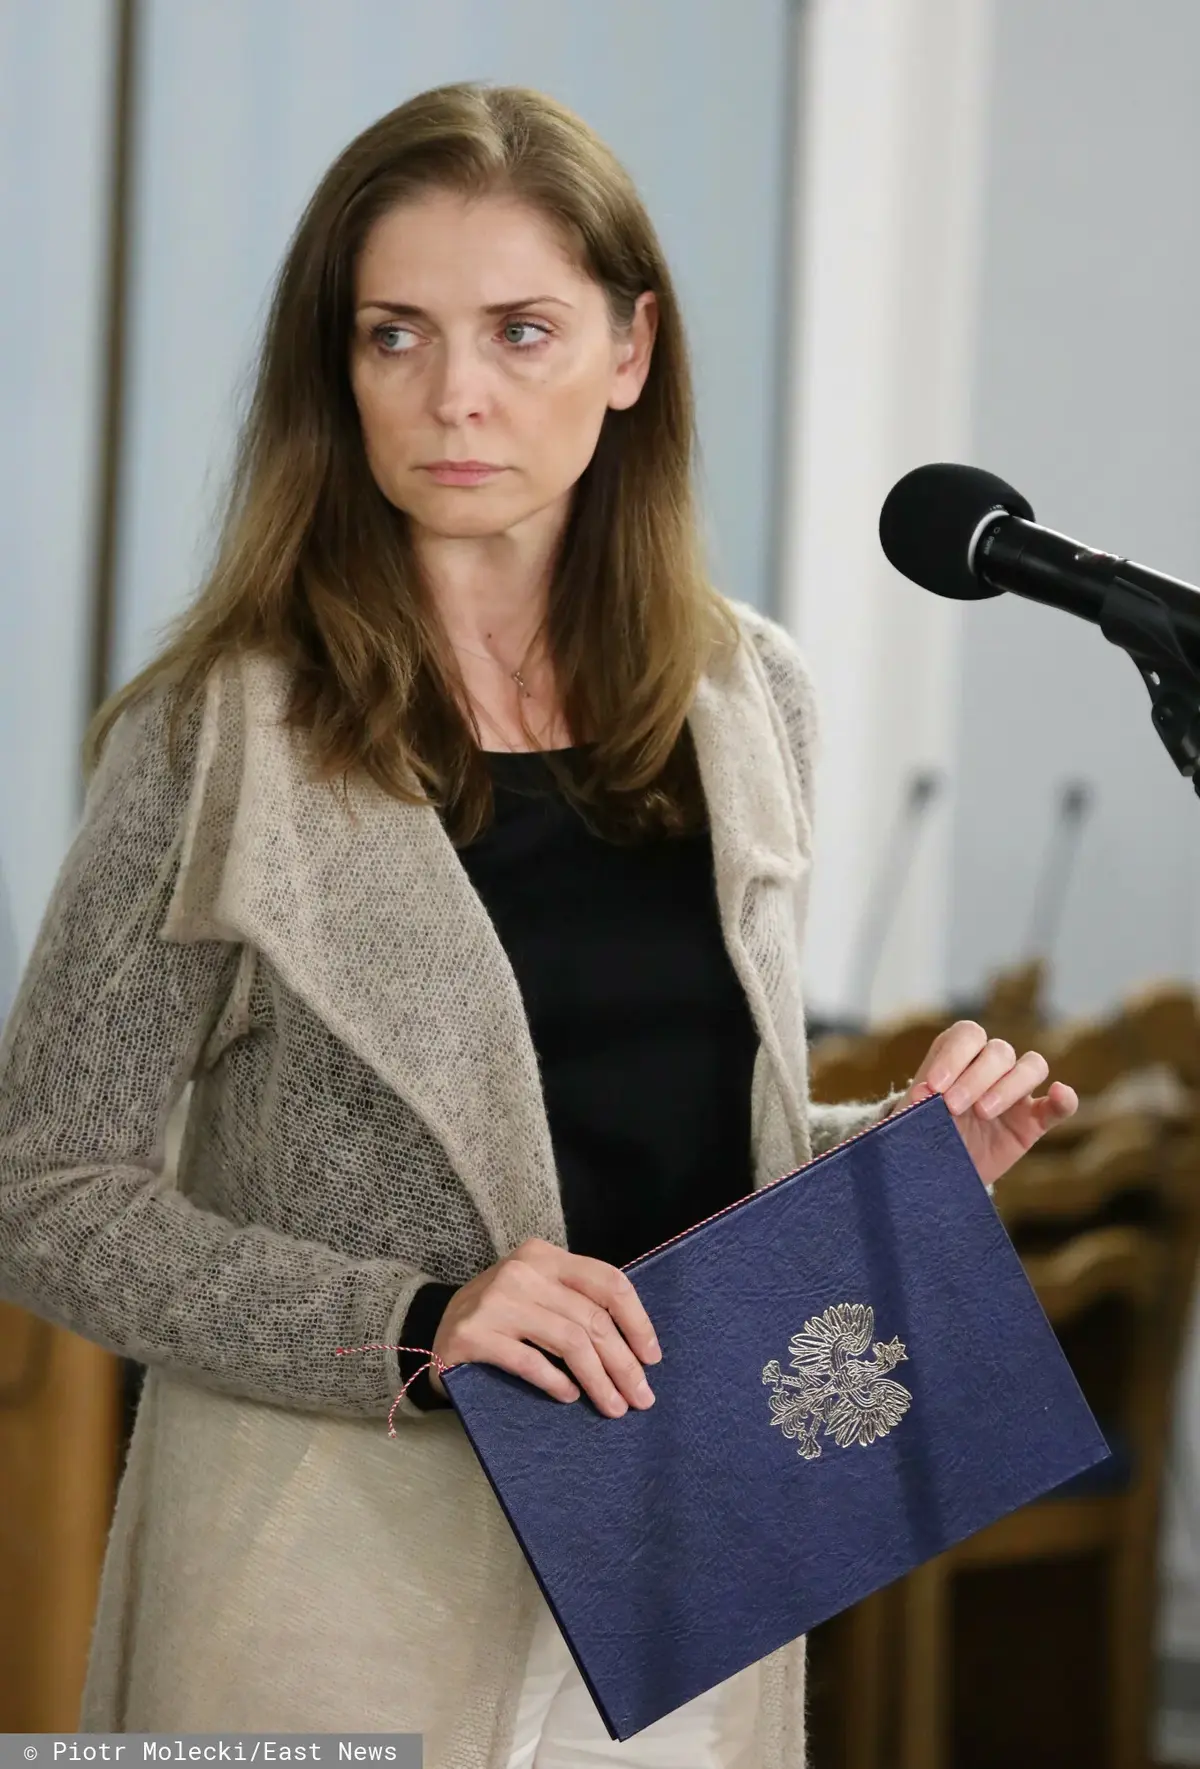 Joanna Mucha w szaro-beżowym płaszczu stojąca przy mikrofonie, trzymając w ręku granatową teczkę z godłem Polski